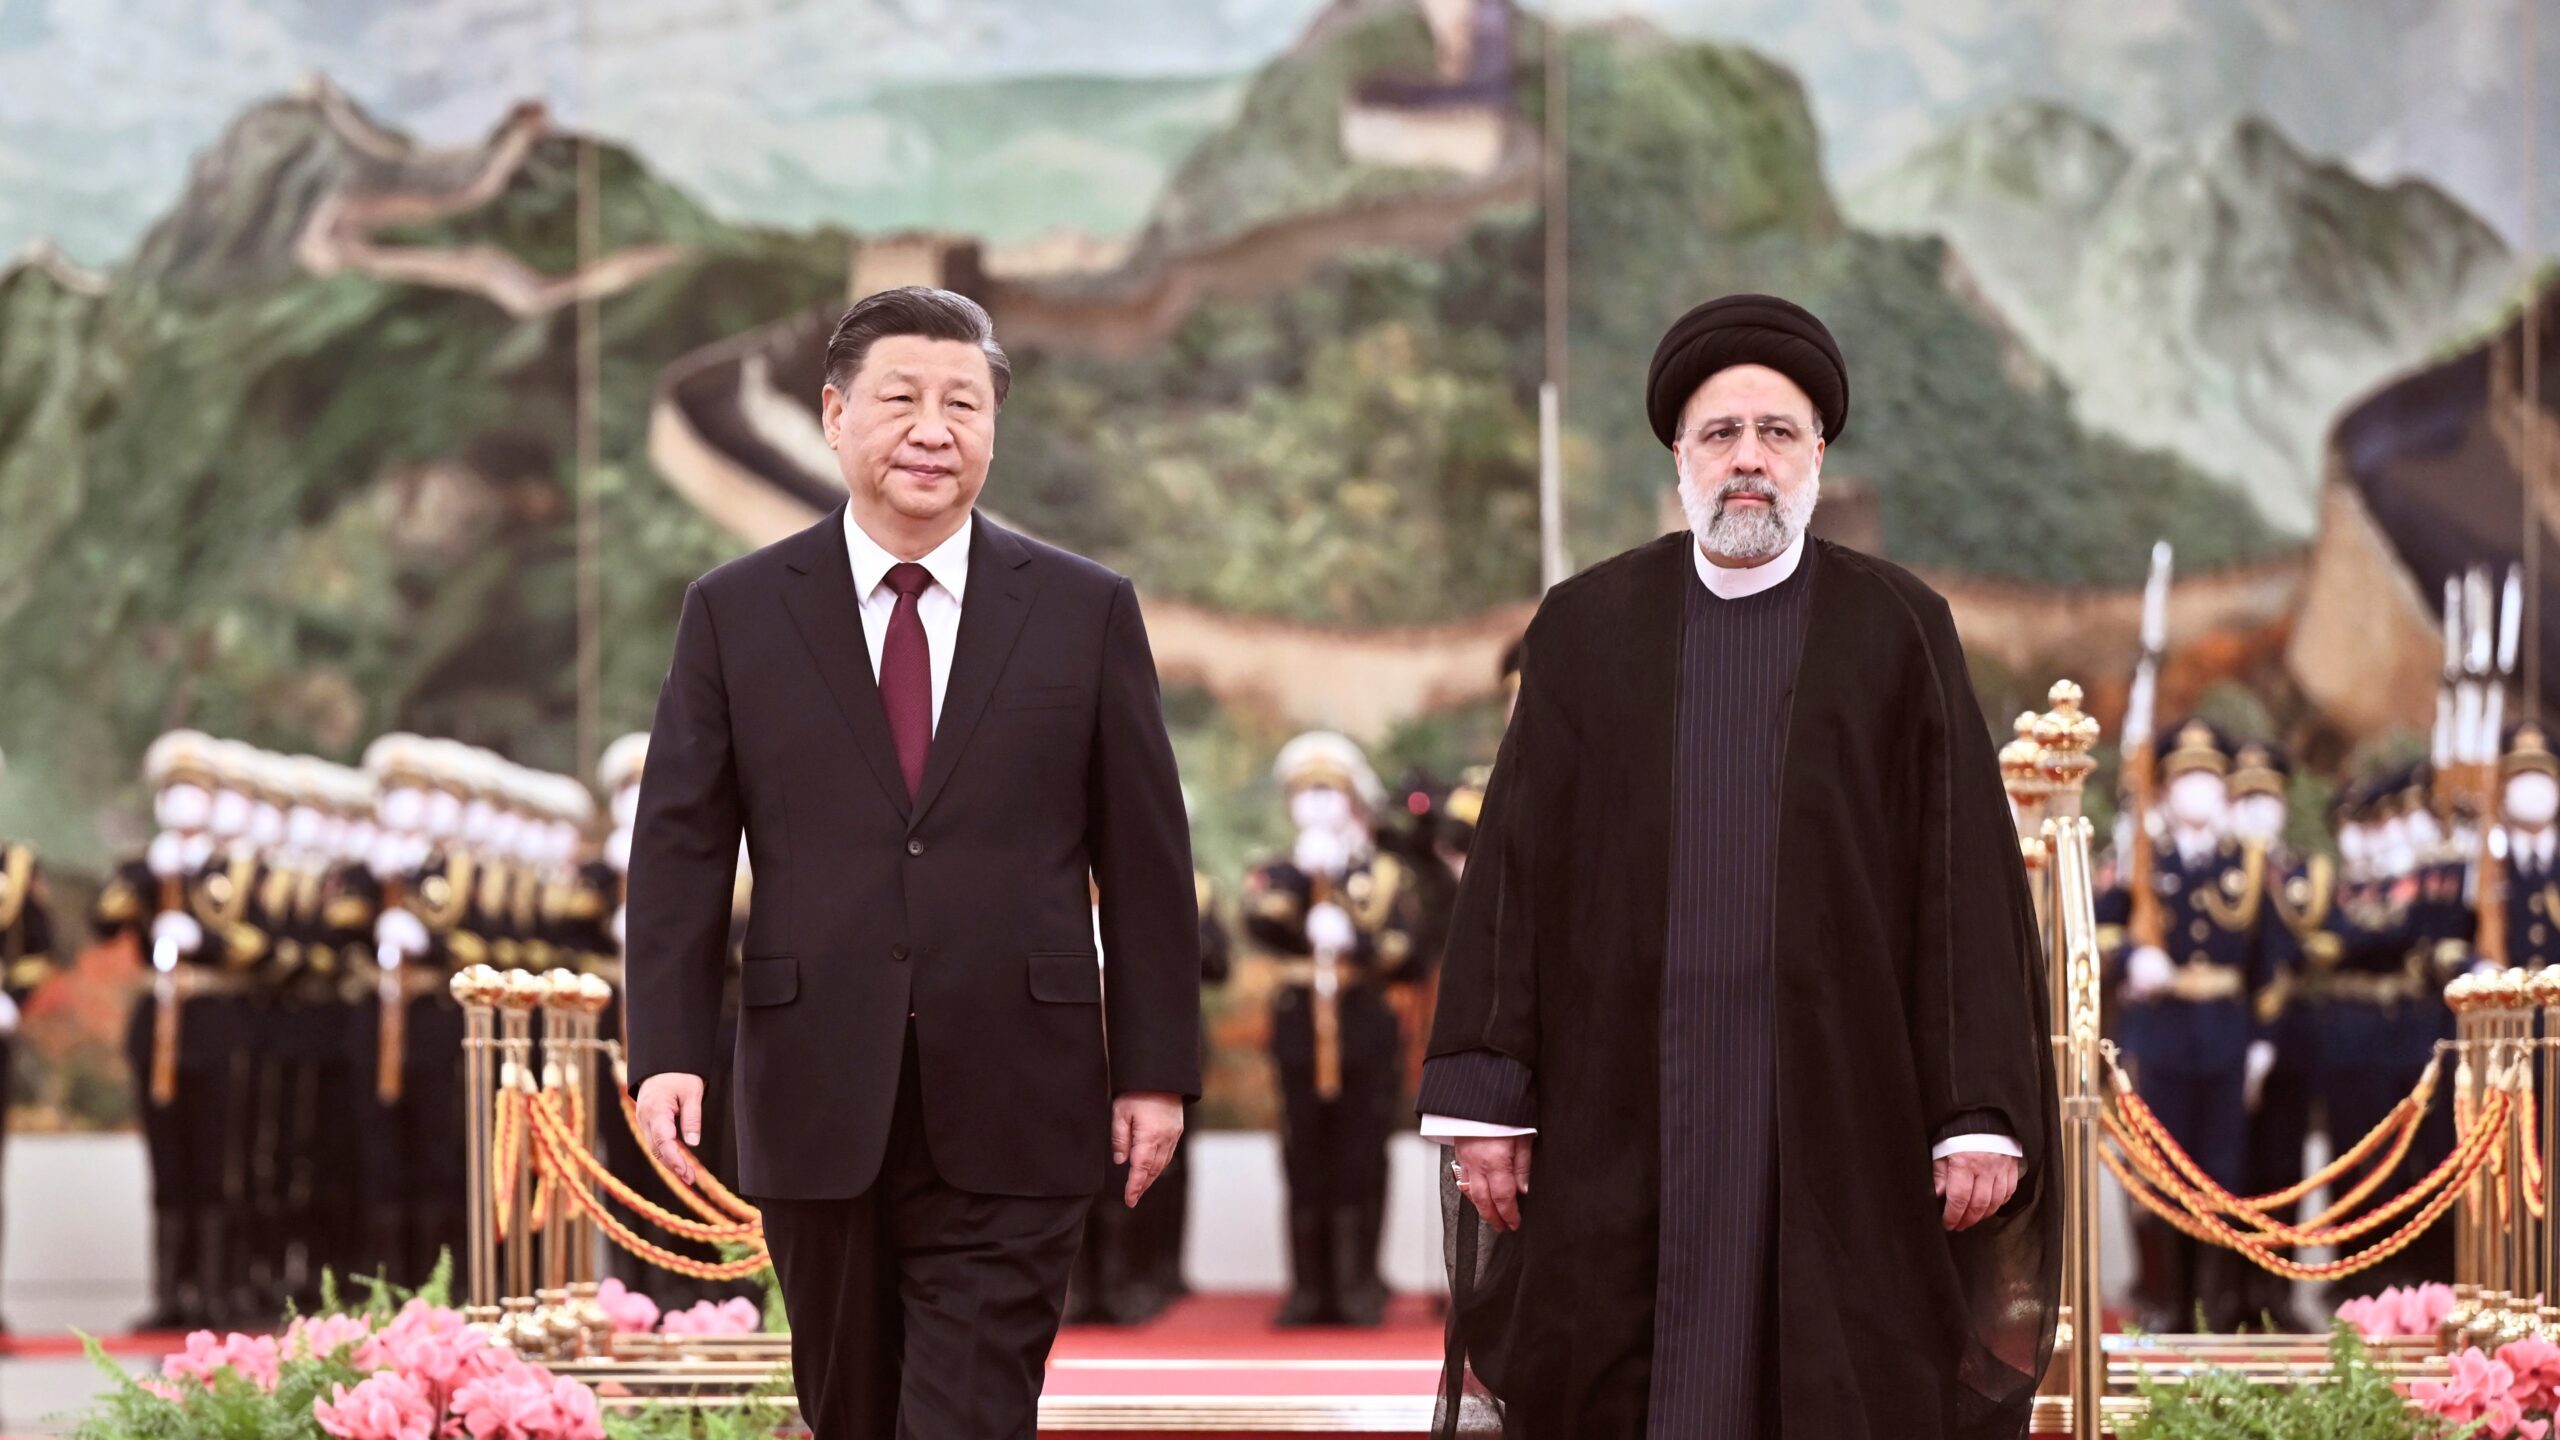 Iran Pivots Toward Asia